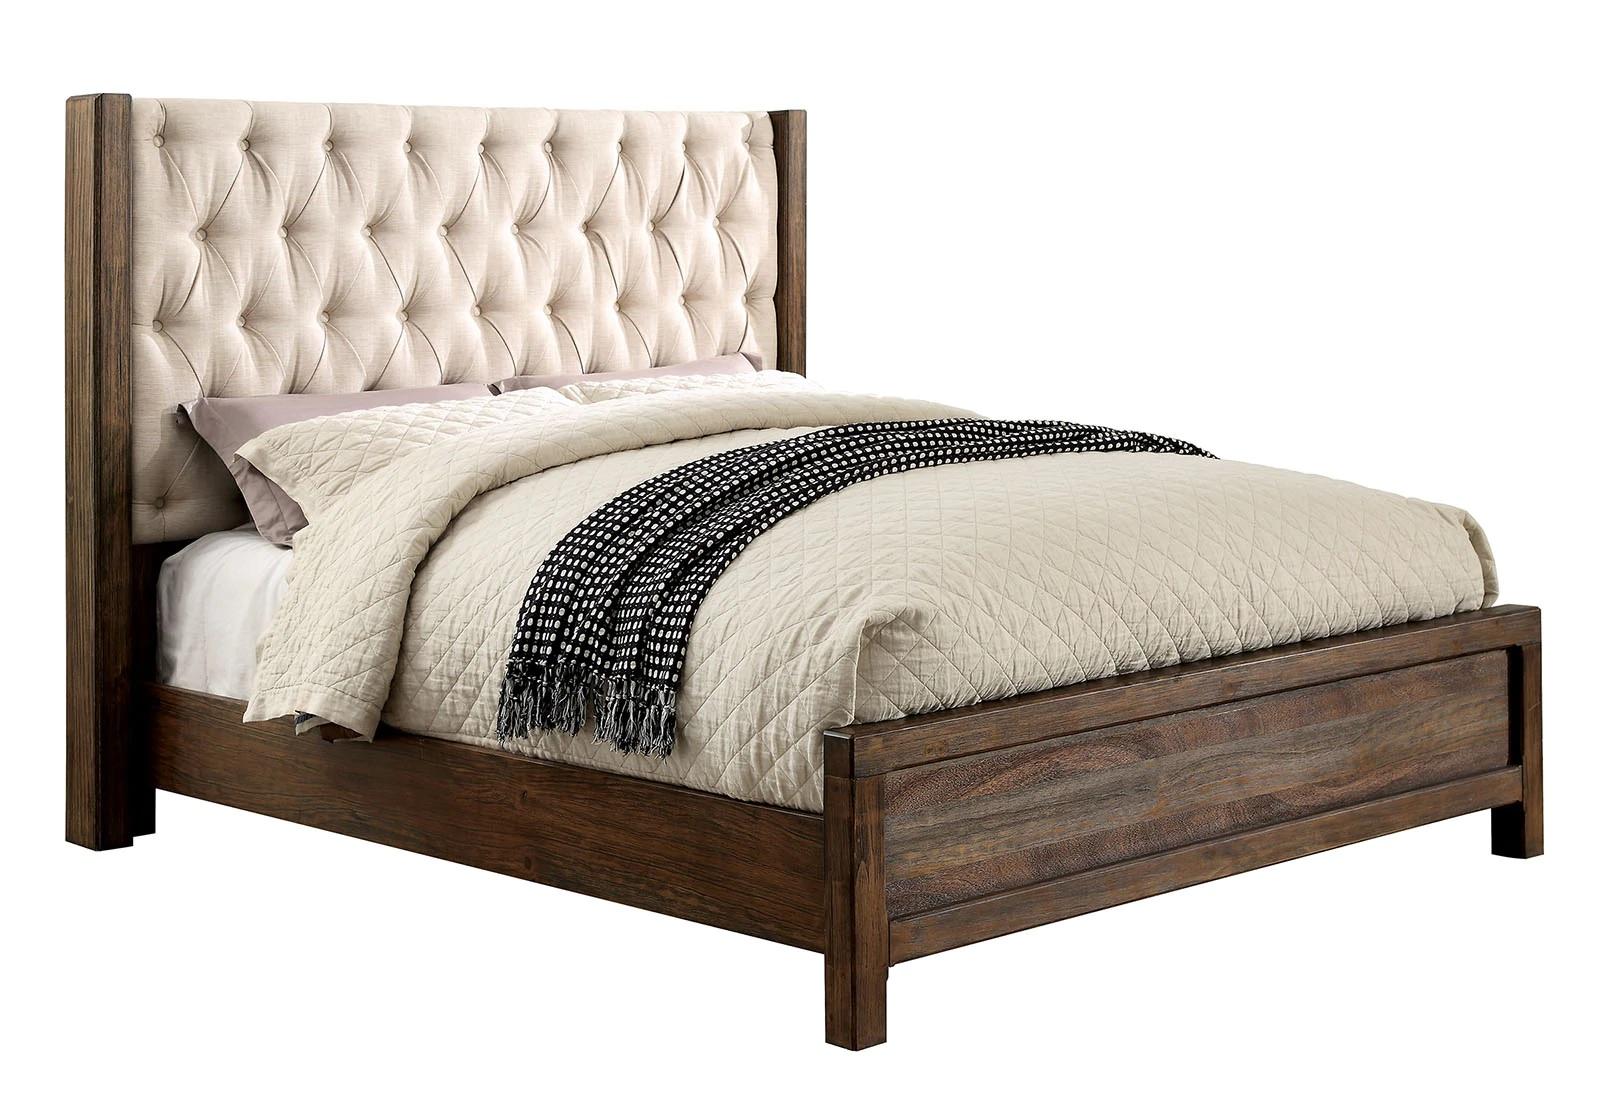 

    
Rustic Natural & Beige Solid Wood Queen Bedroom Set 6pcs Furniture of America CM7577-Q Hutchinson
